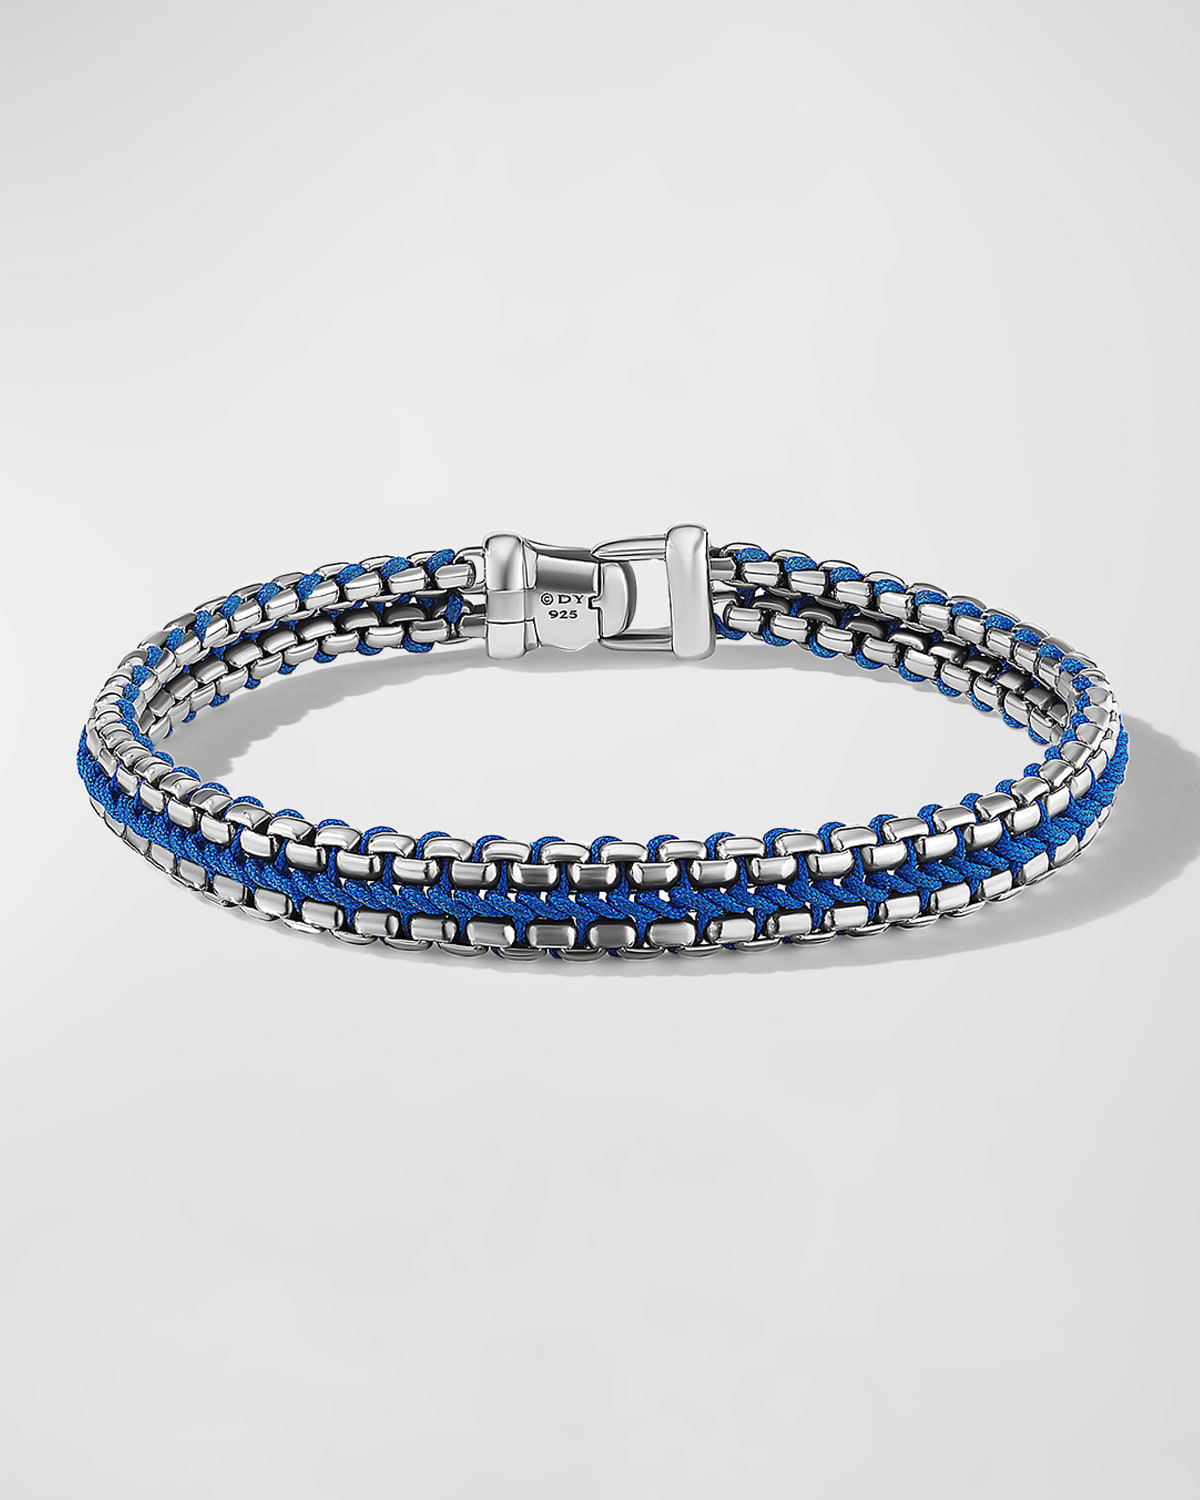 David Yurman Men's Woven Box Chain Bracelet In Sterling Silver With Nylon, 10mm, 5.5"l In Blue